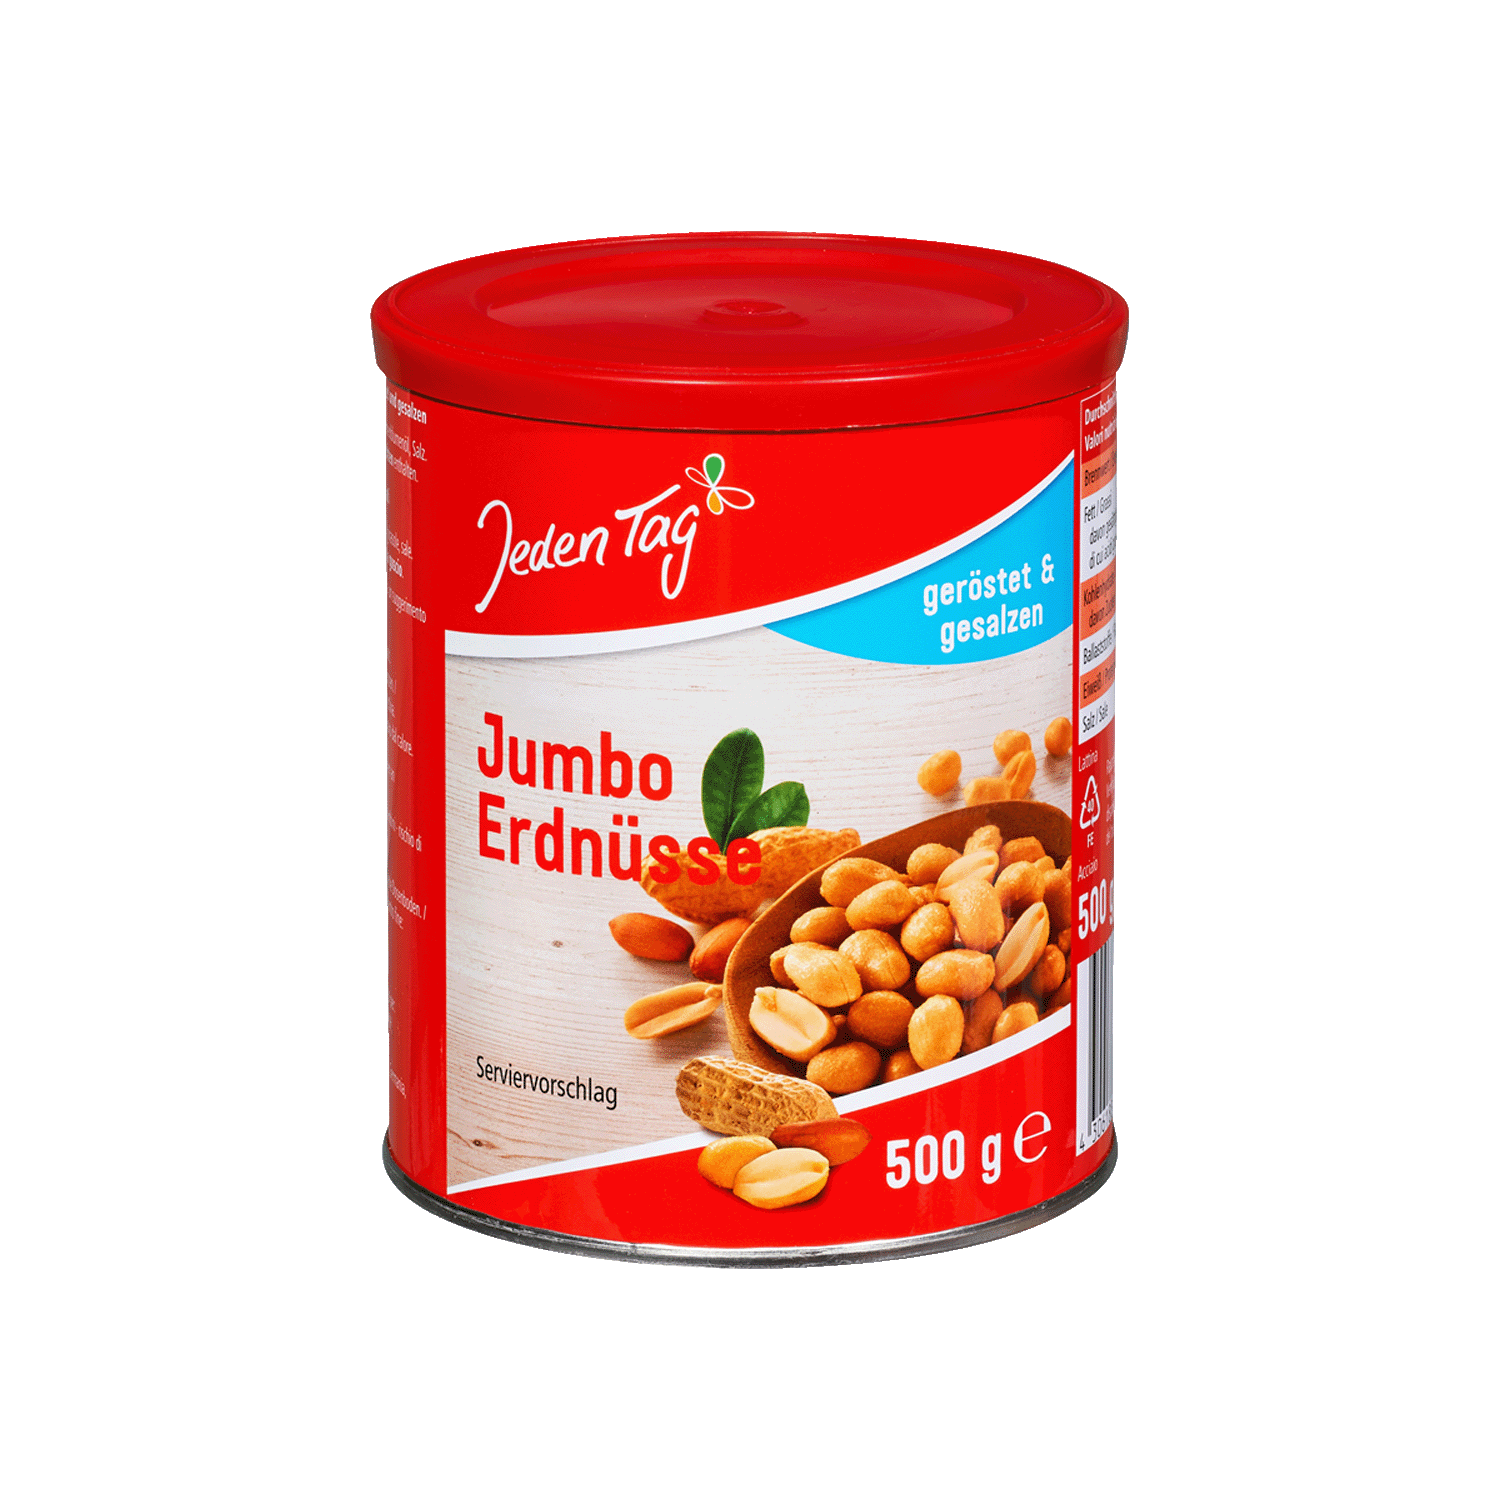 Jumbo peanuts roasted & salted, 500g